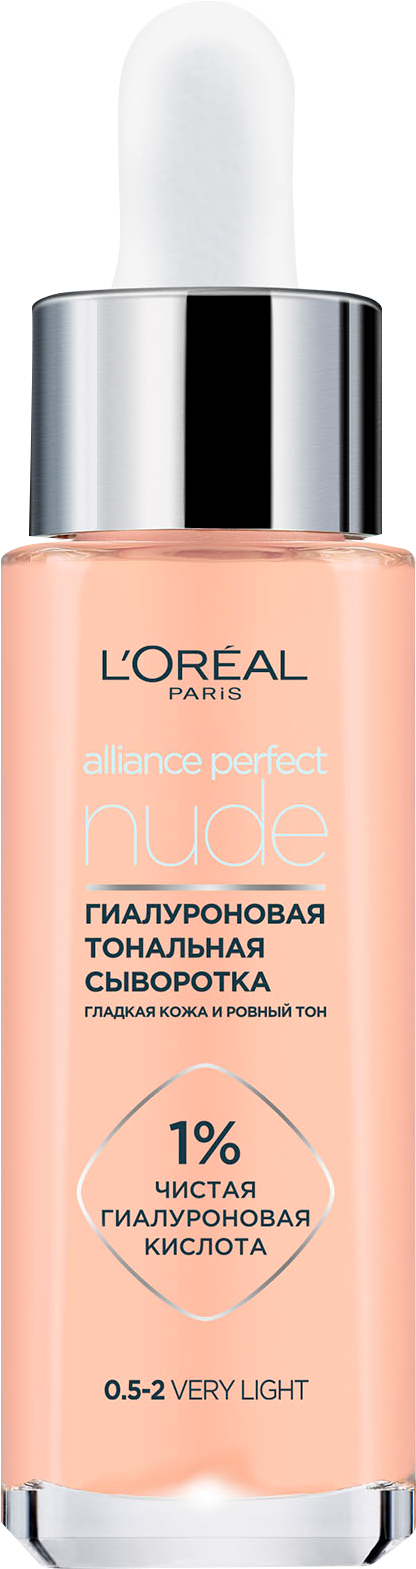 Тональная гиалуроновая сыворотка Loreal Paris Alliance Perfect Nude Тон 2-3 30мл - фото №11